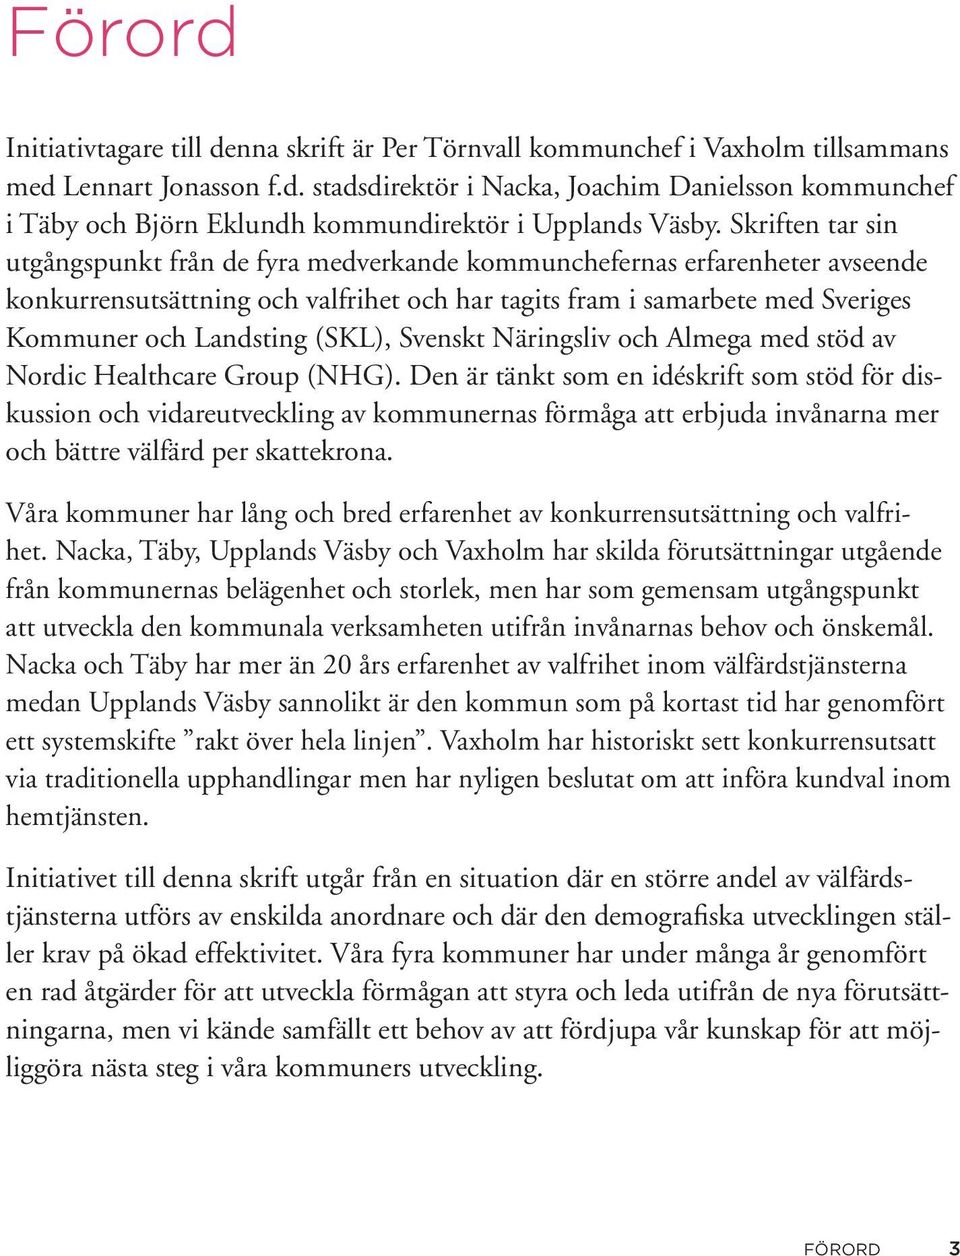 (SKL), Svenskt Näringsliv och Almega med stöd av Nordic Healthcare Group (NHG).